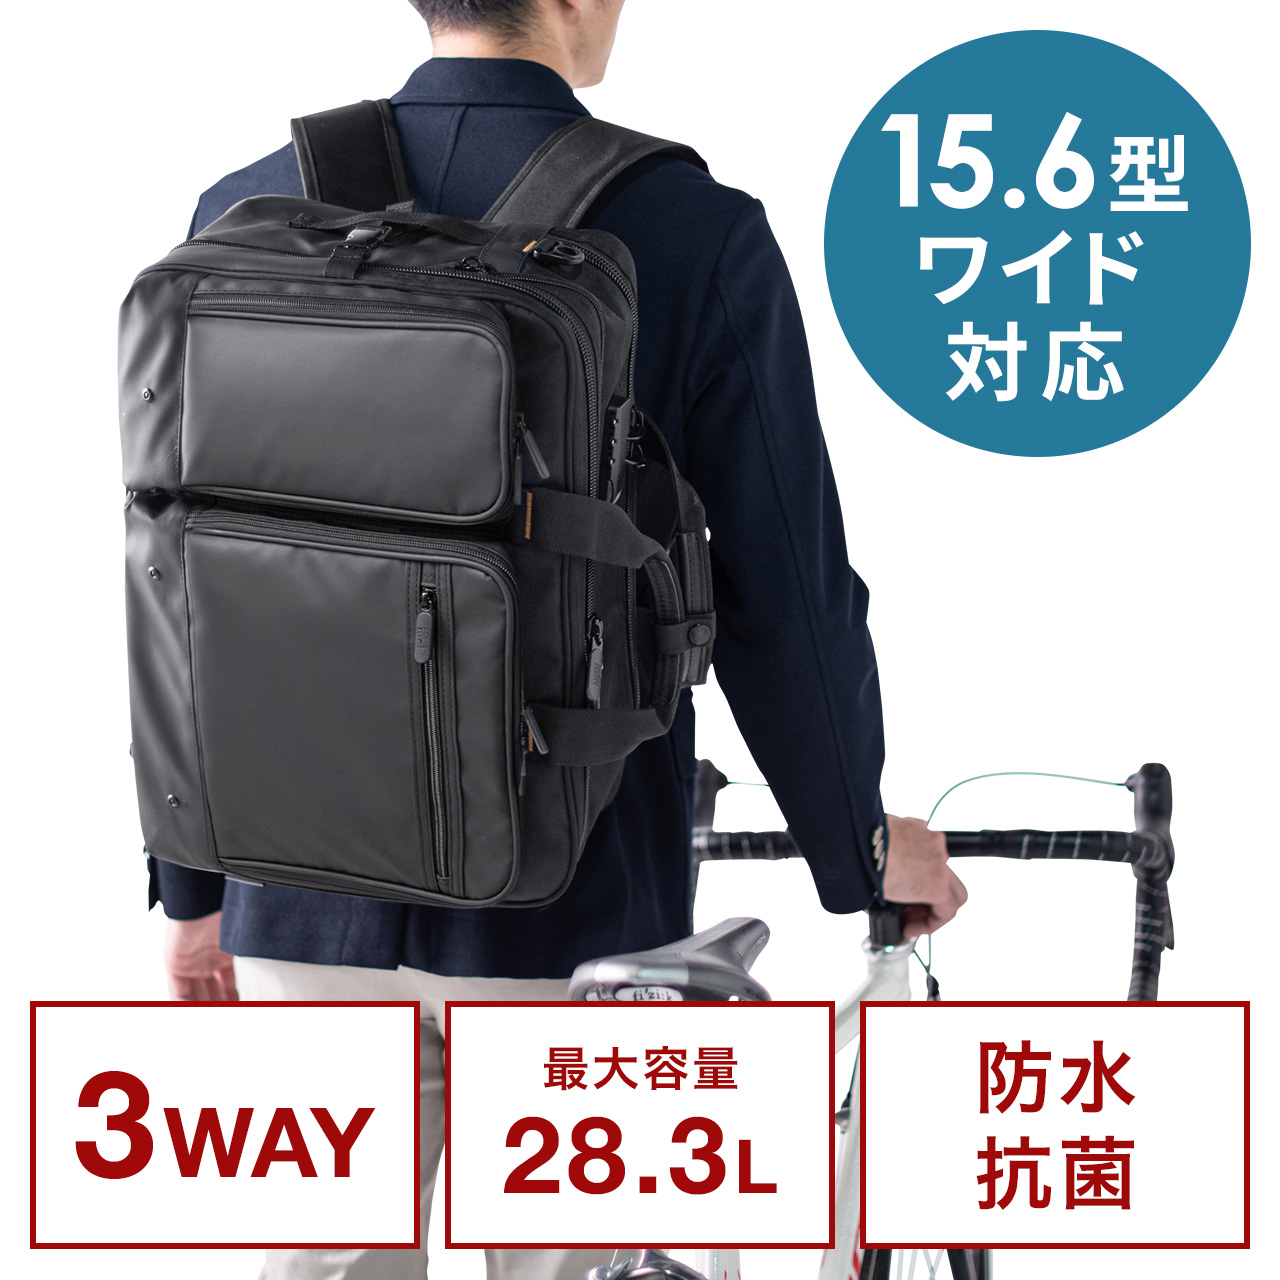 【ビジネス応援セール】3WAYビジネスバッグ 大容量28.3L リュック ショルダー対応 ビジネスリュック 200-BAG171BK